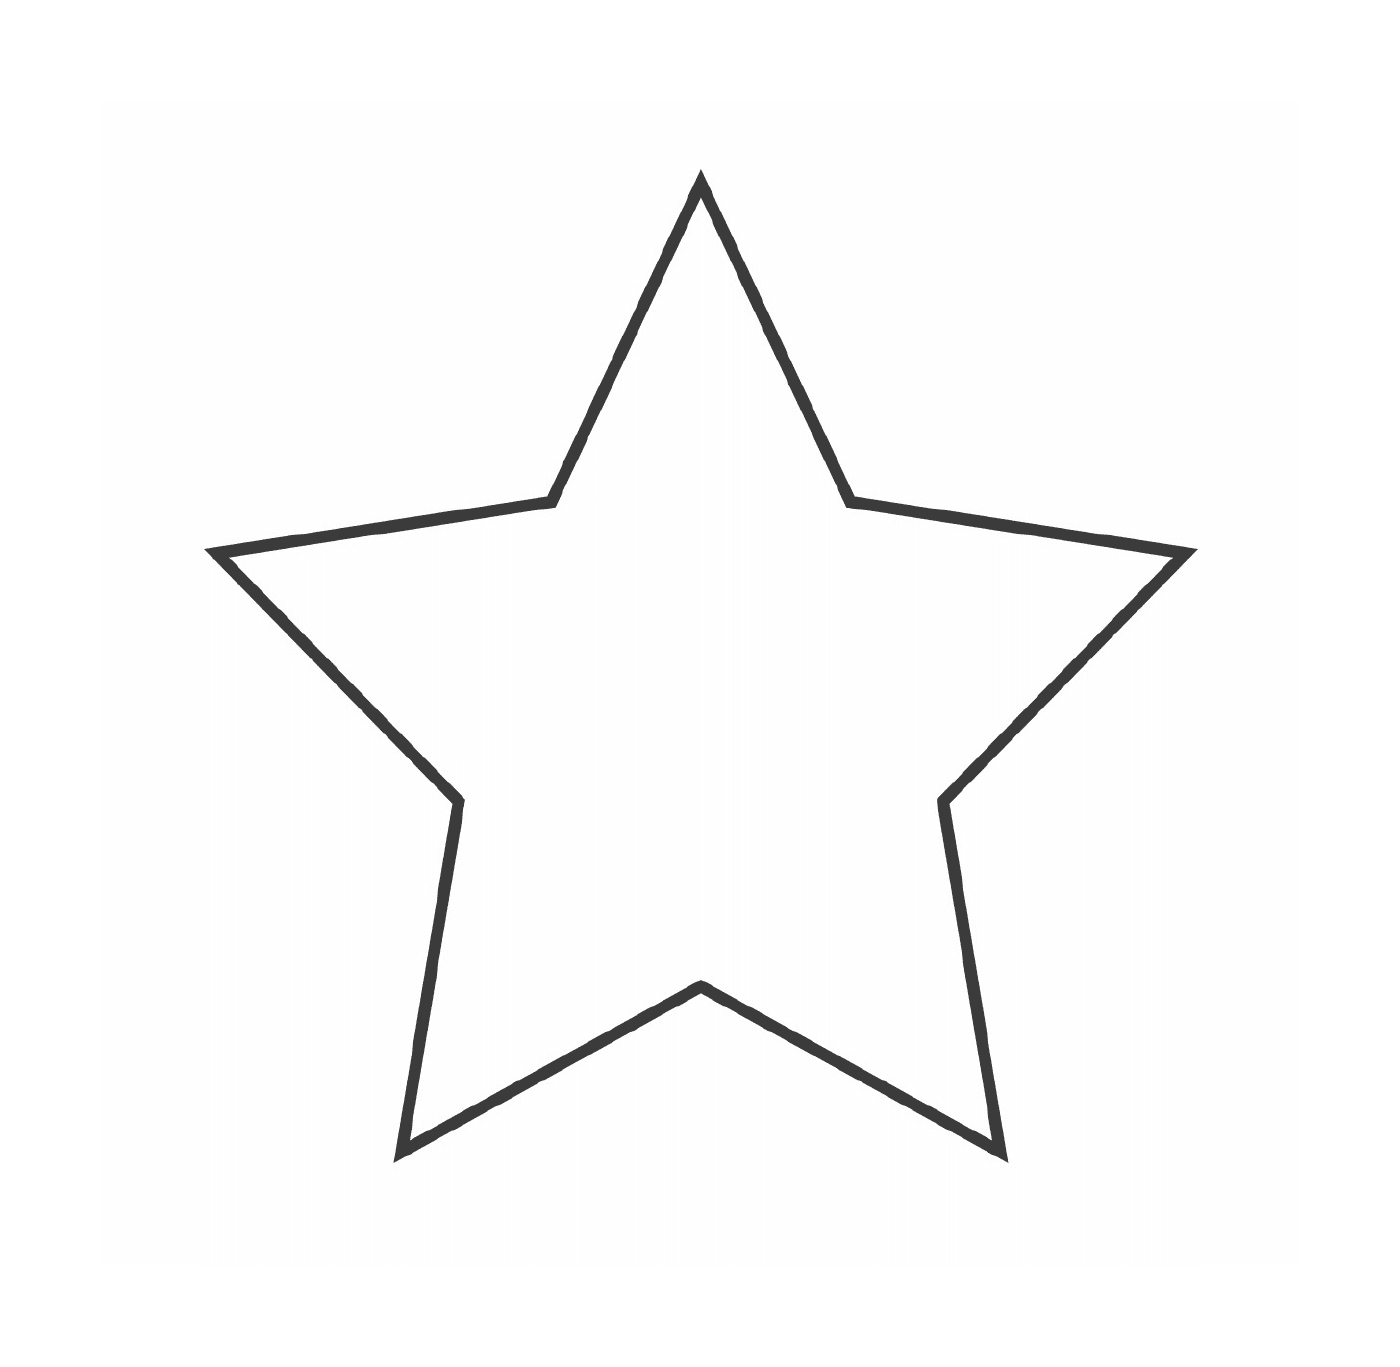  一个有五个分支的恒星 